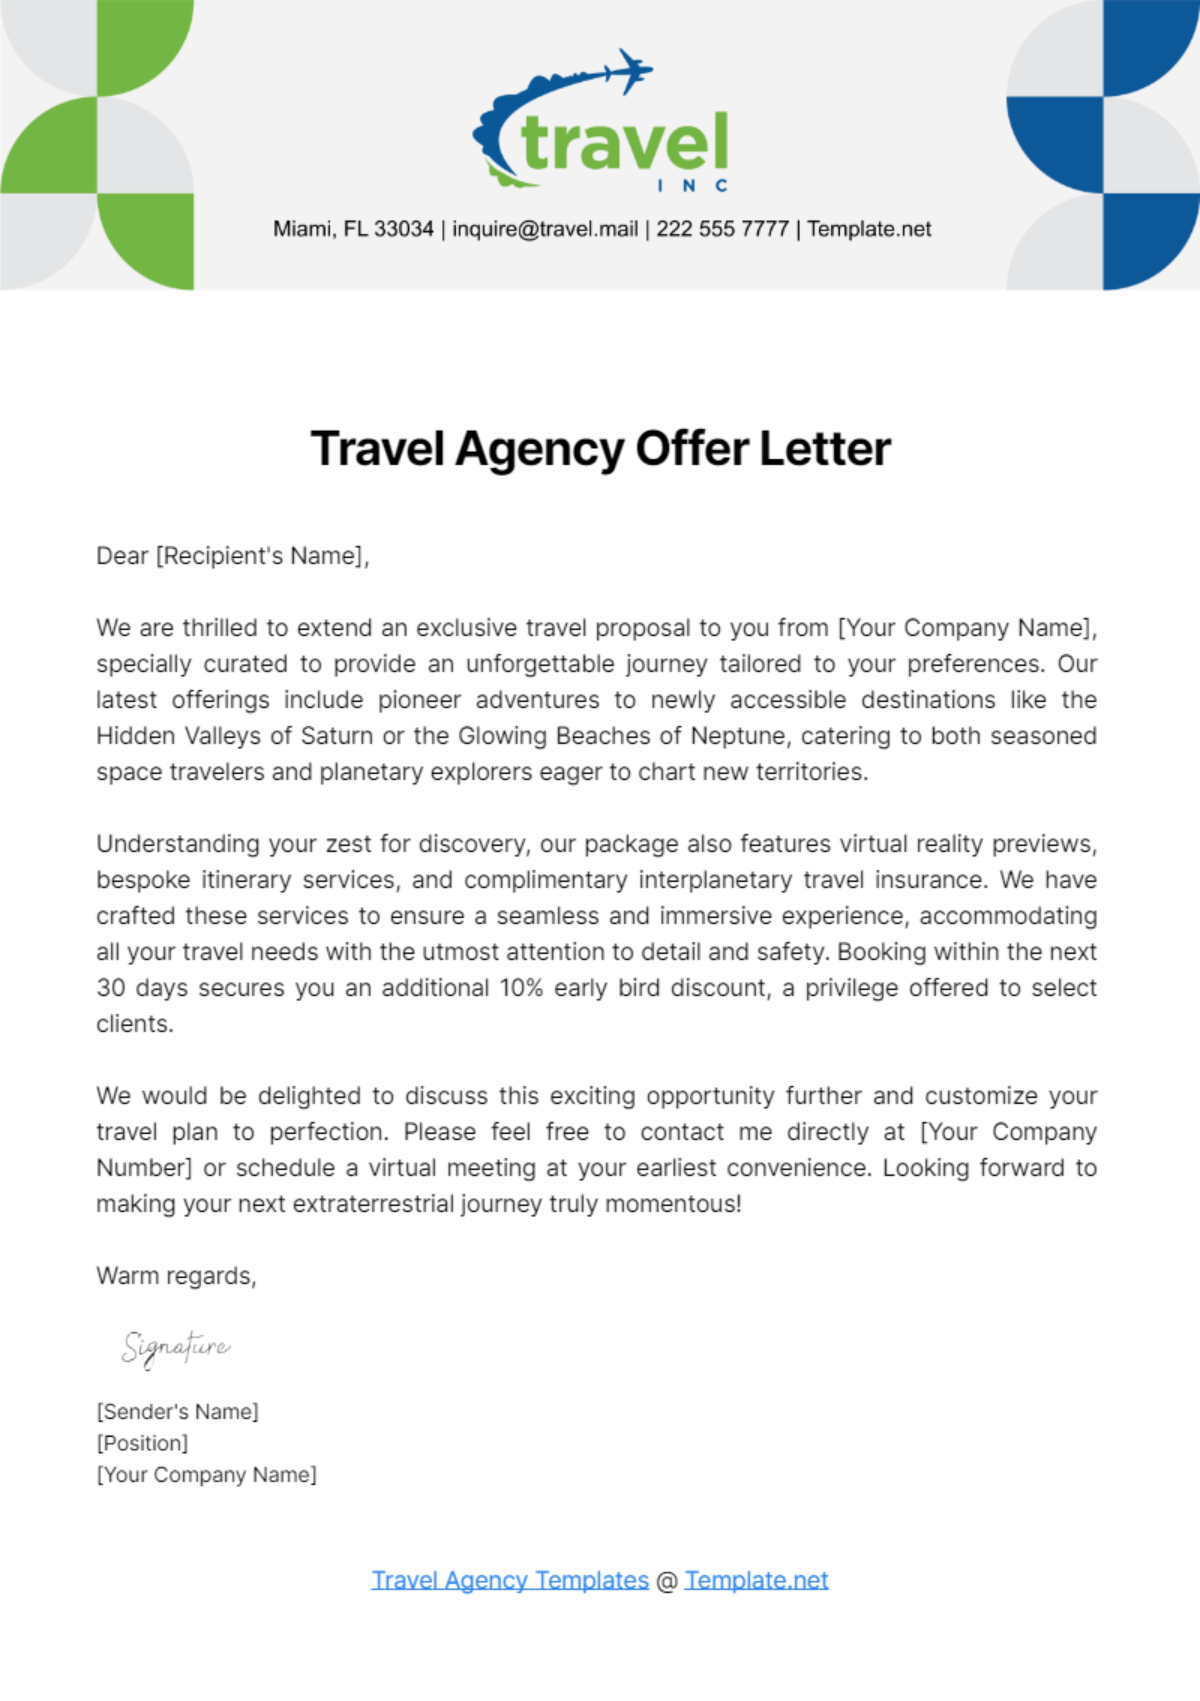 Travel Agency Offer Letter Template